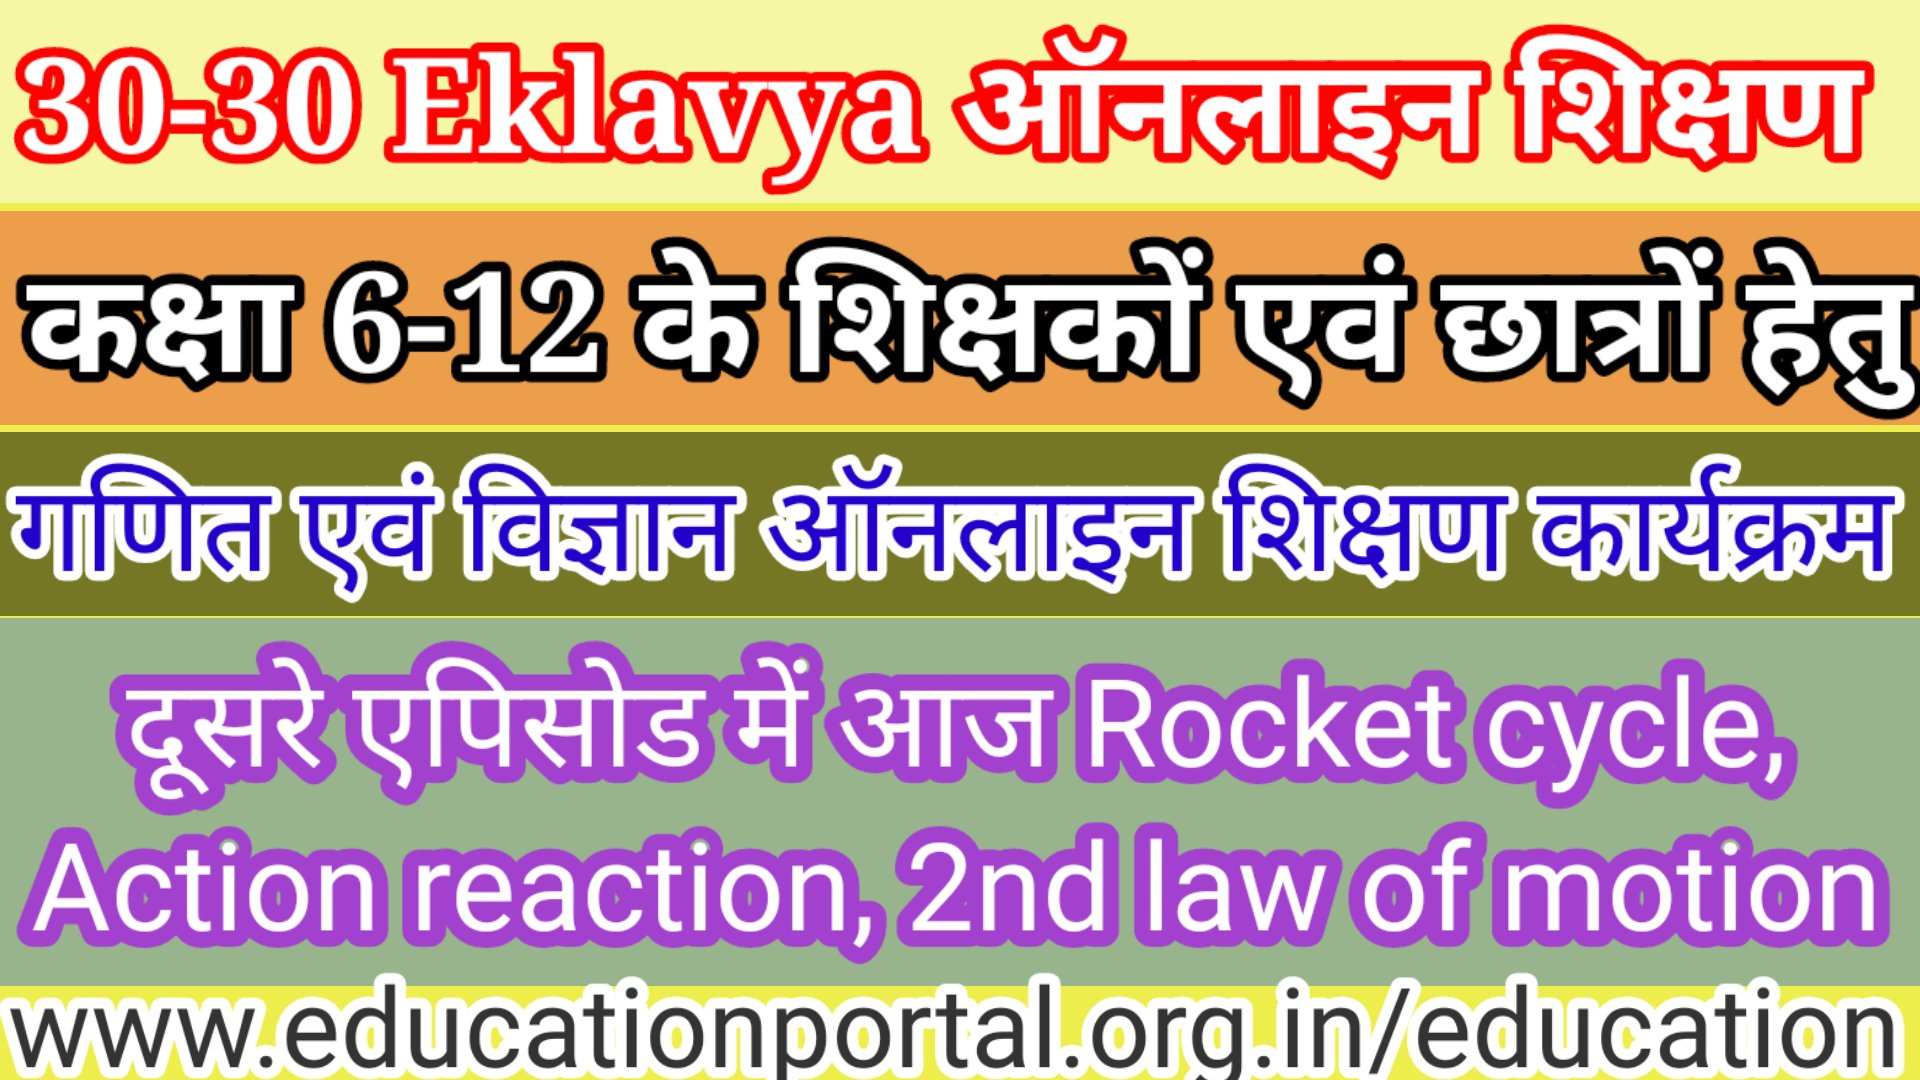 30-30 Eklavya ऑनलाइन शिक्षण कार्यक्रम कक्षा 6-12 के शिक्षकों एवं छात्रों हेतु गणित एवं विज्ञान ऑनलाइन शिक्षण कार्यक्रम दूसरे एपीसोड में Rocket cycle,Action reaction, 2nd law of motion